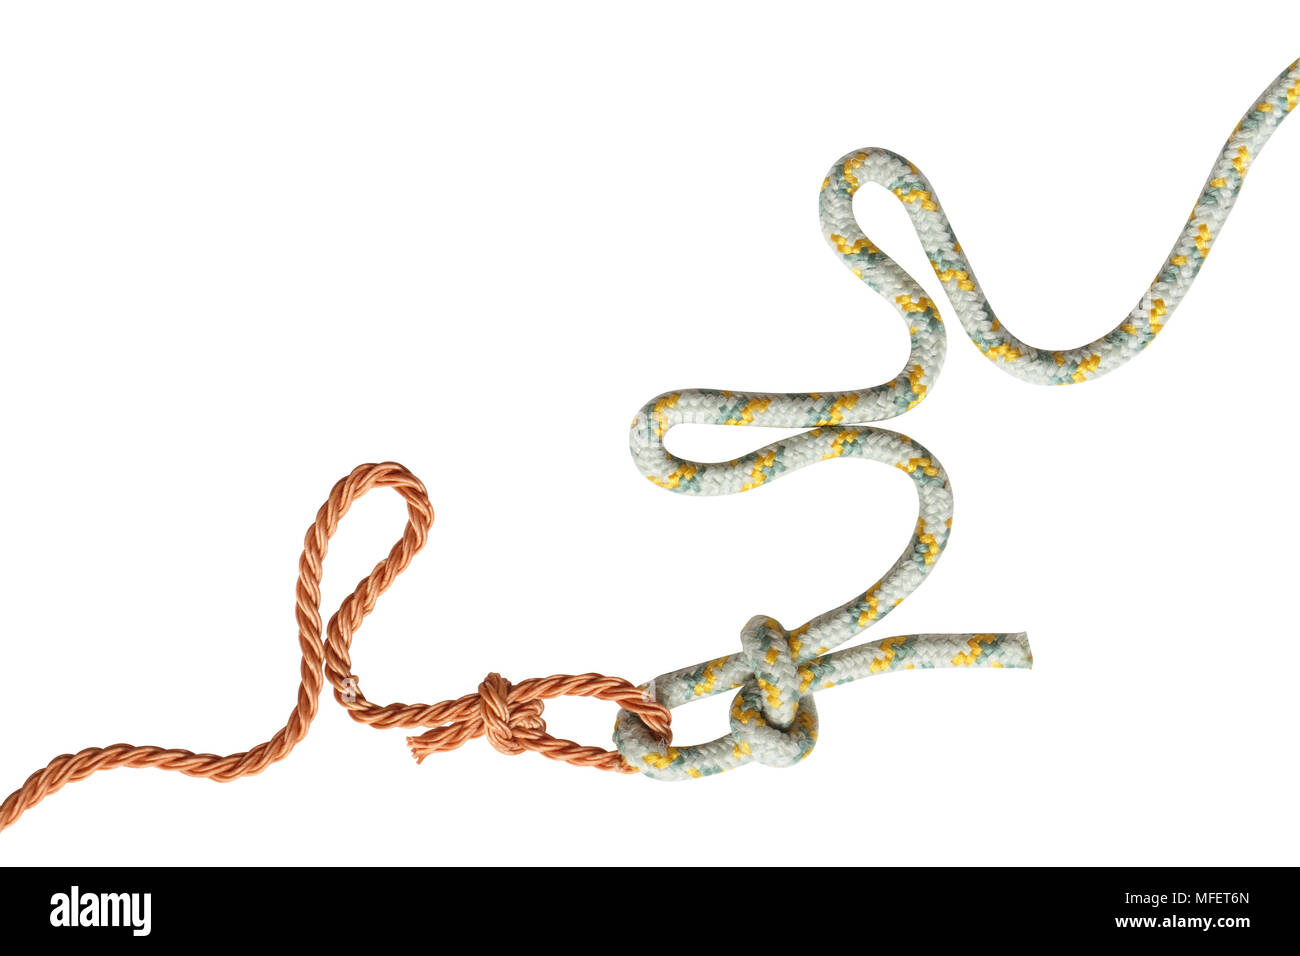 Deux cordes avec des noeuds isolé sur fond blanc avec clipping path Banque D'Images